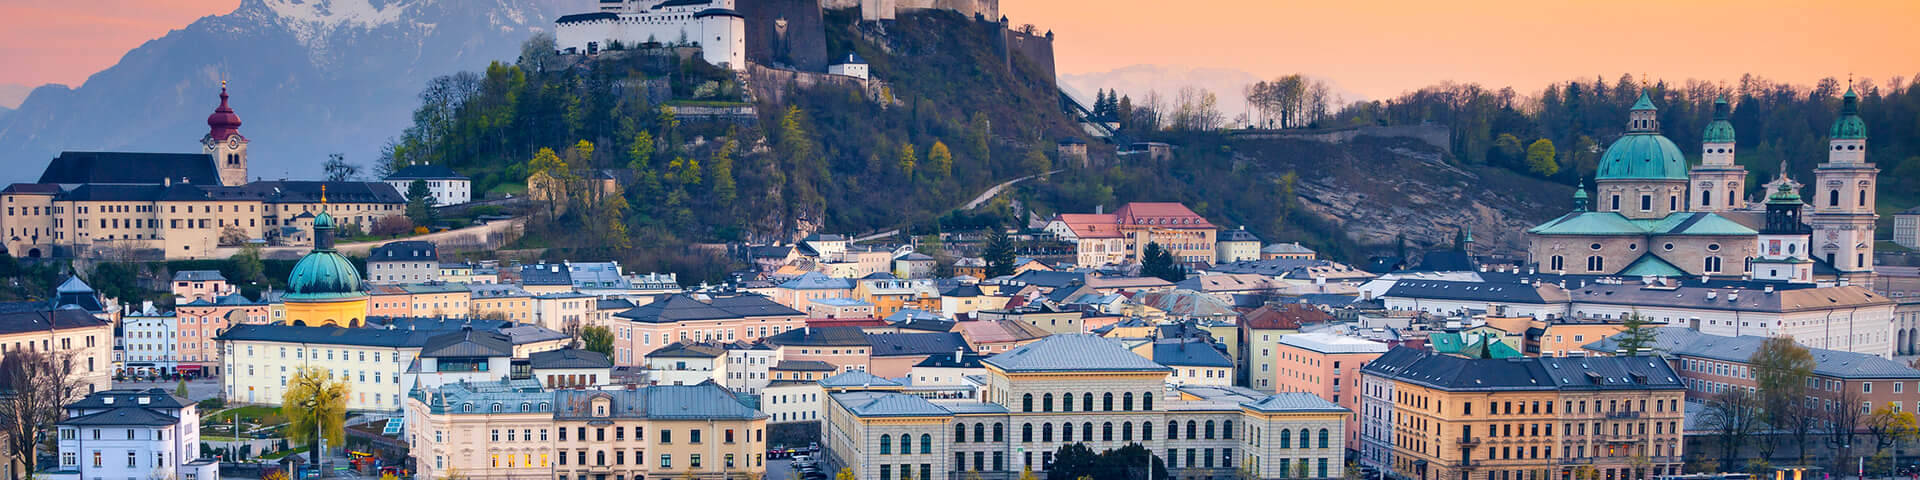 Salzburg in der Dämmerung